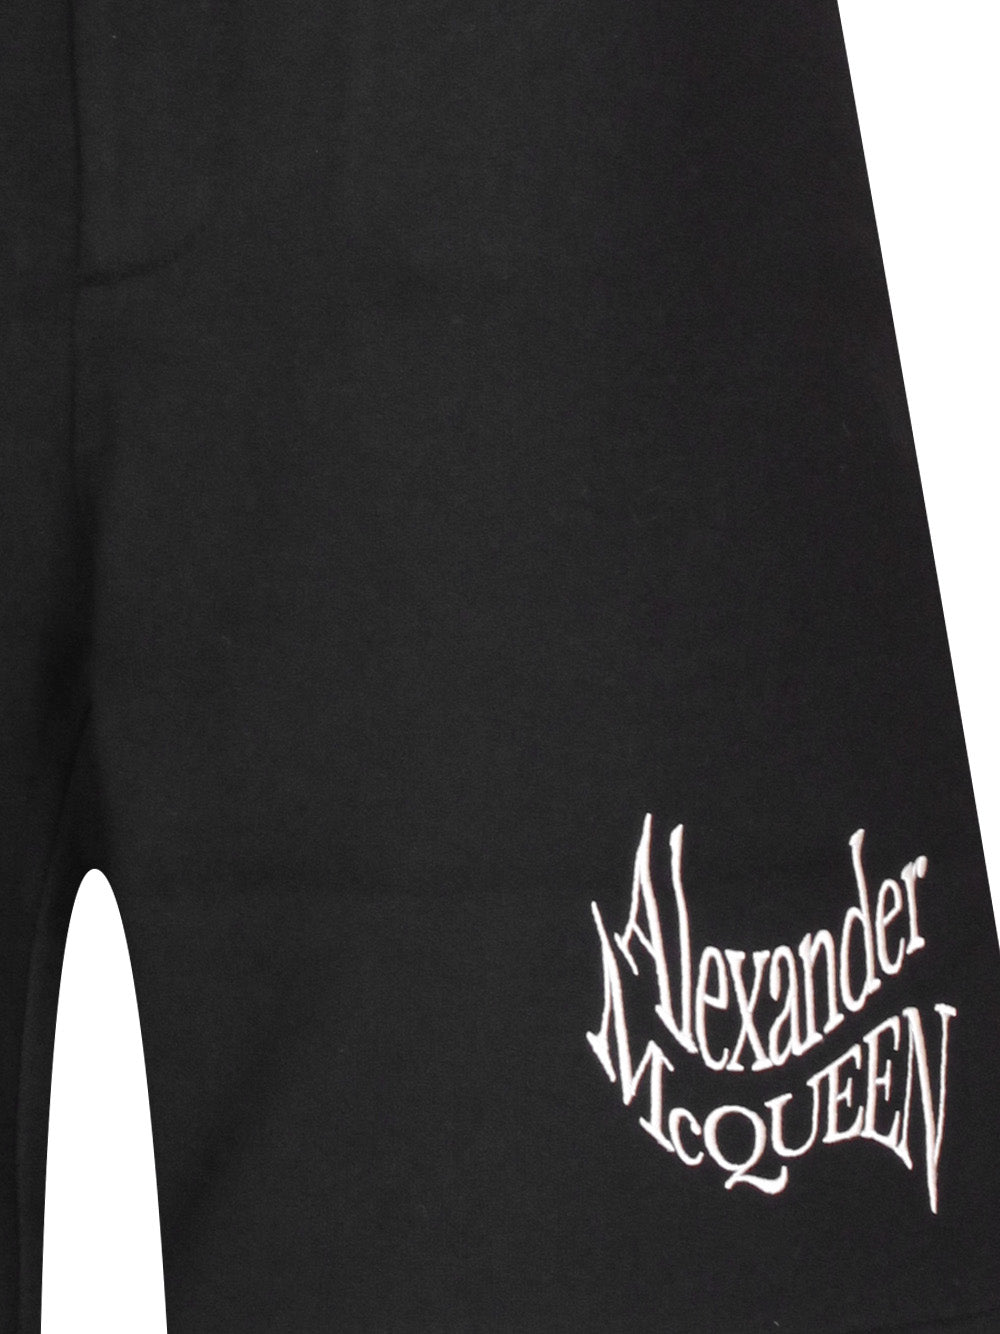 Alexander McQueen 781880 Man Black Shorts - Zuklat